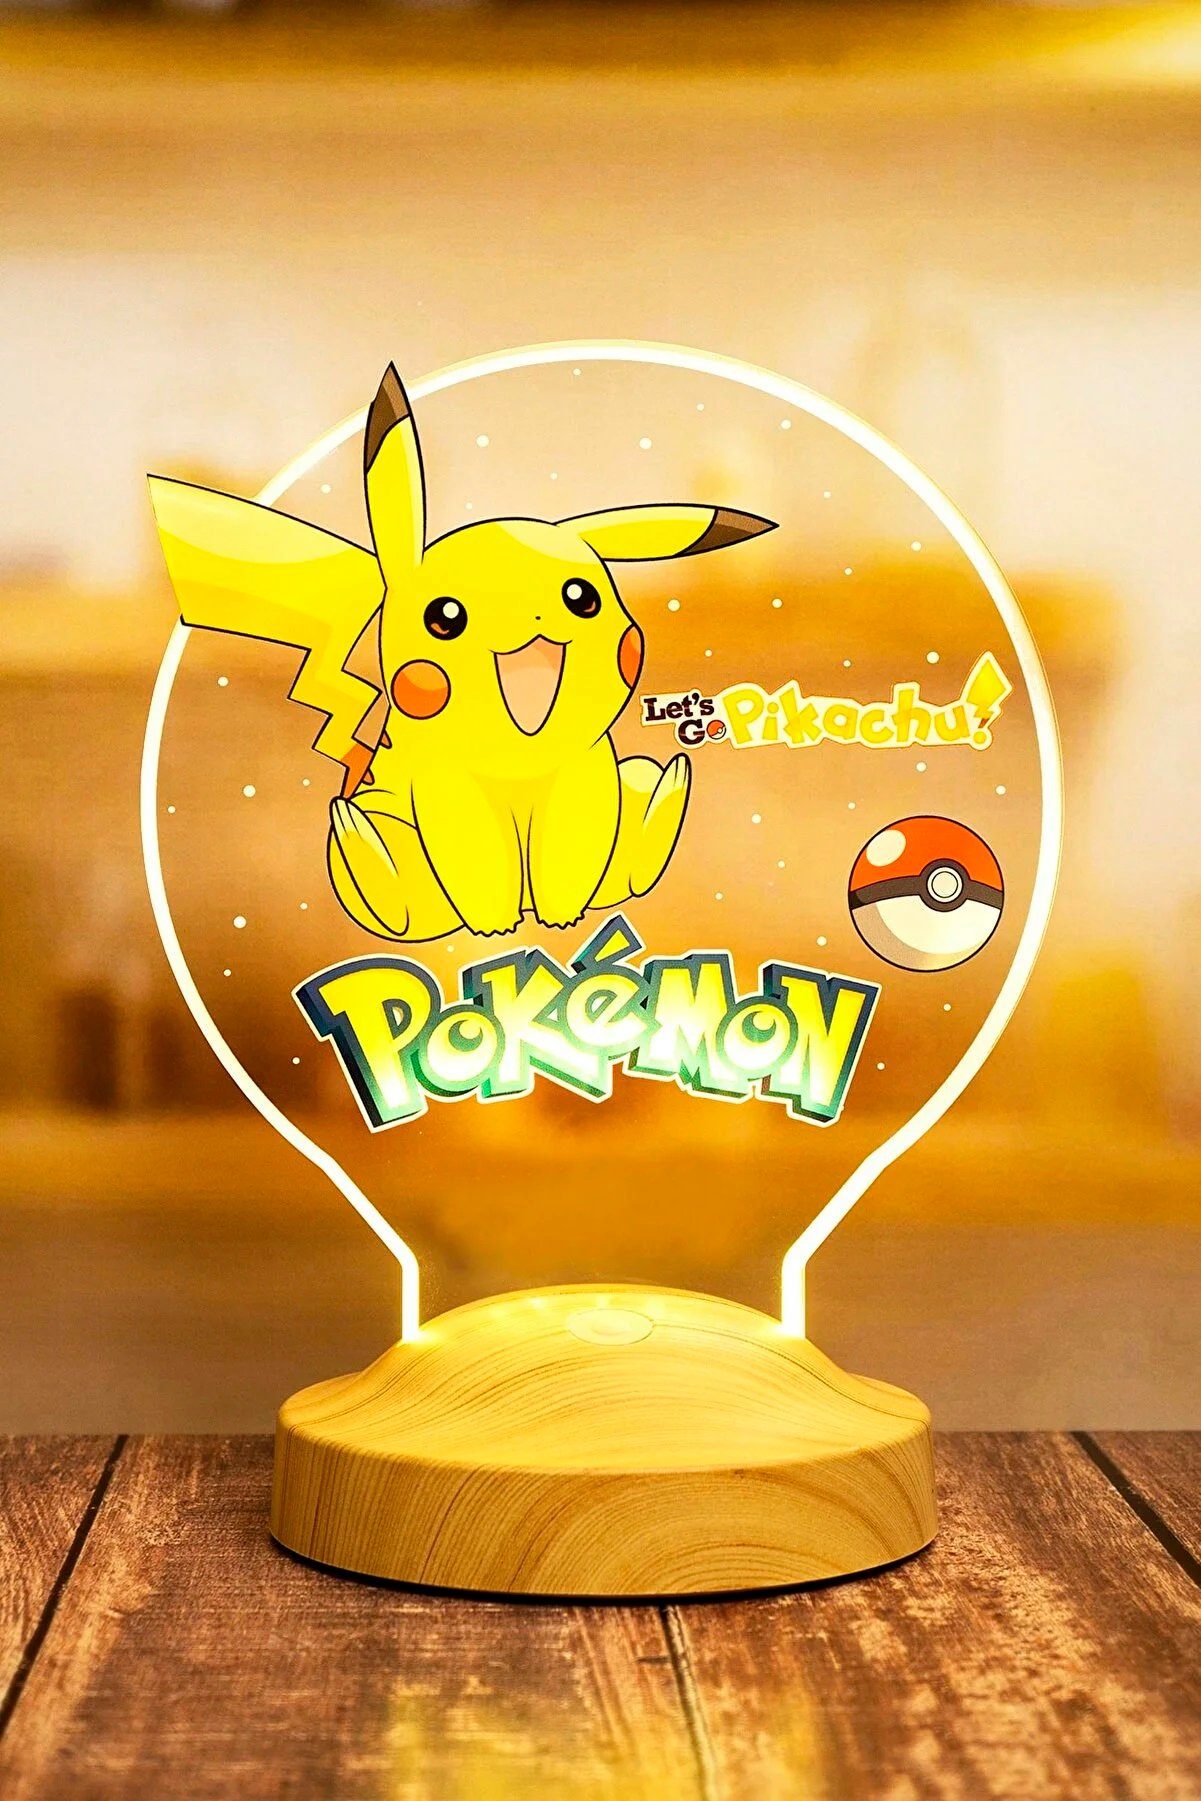 Geschenkelampe LED Nachttischlampe Pikachu für Pokemon Fans 3D Nachtlicht Kinderzimmer Dekor, Leuchte 7 Farben fest integriert, Geschenk für Jungen, Mädchen, Weihnachtsgeschenk | Tischlampen